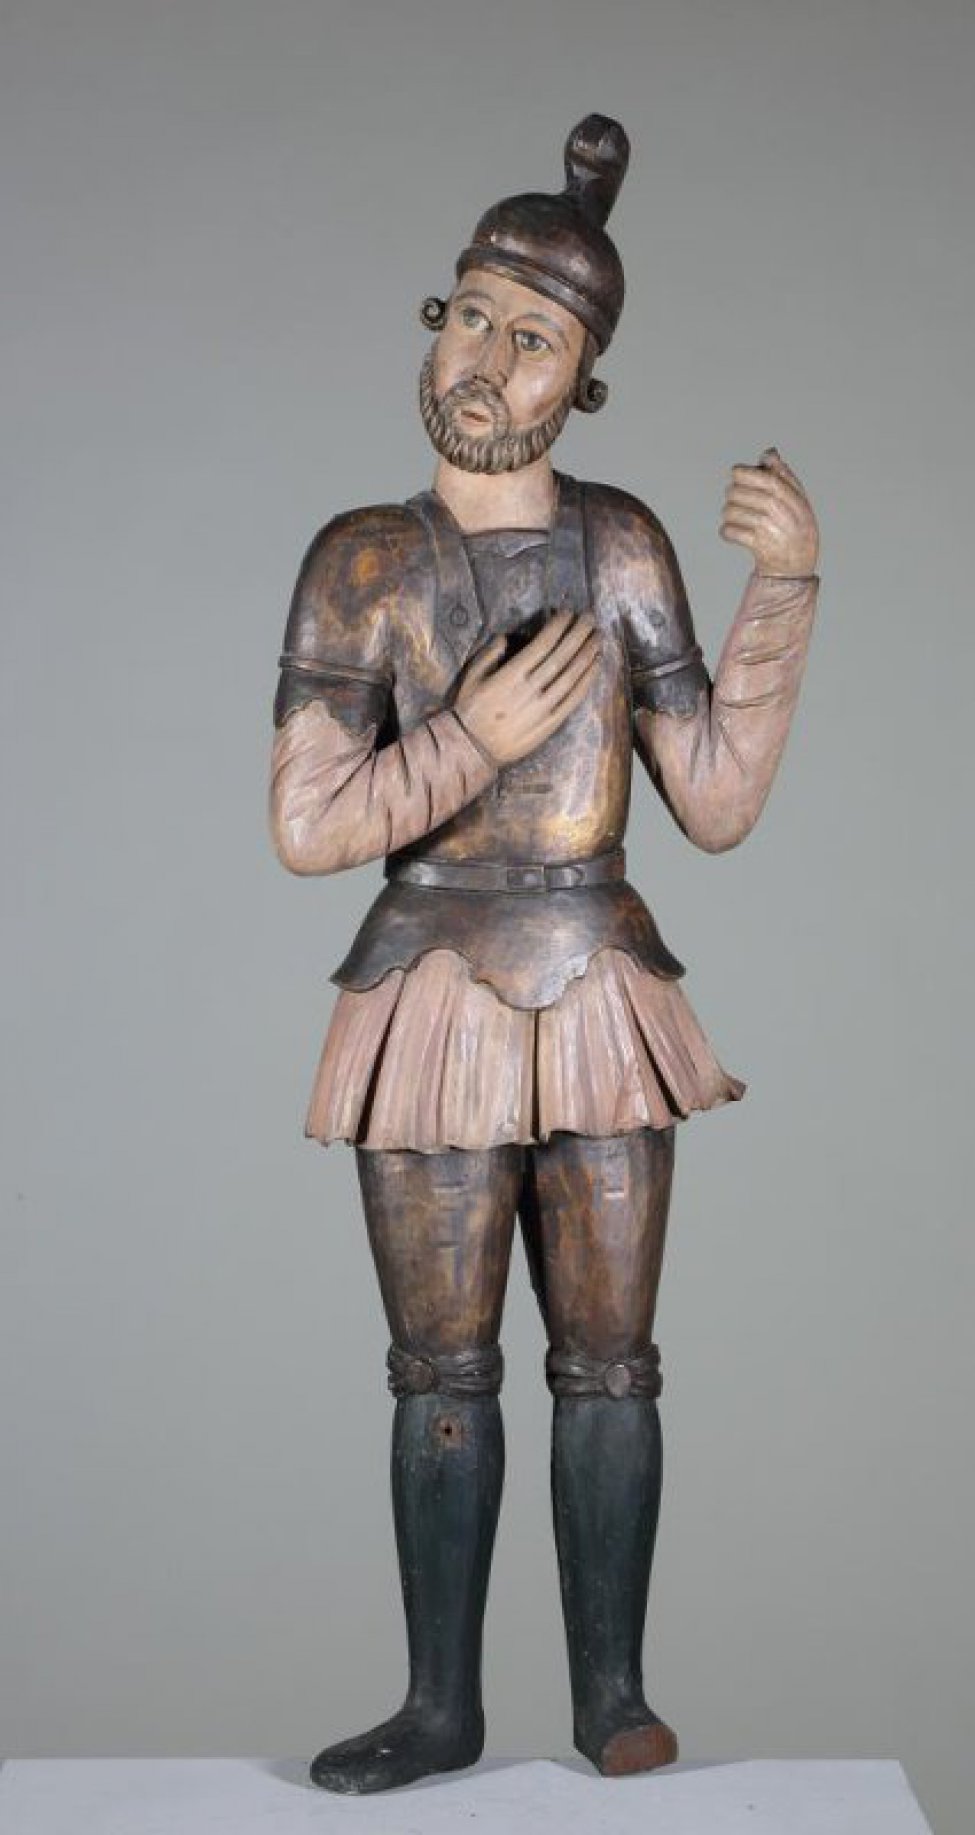 Лонгин Сотник изображен с направленными  вправо лицом. Правая рука лежит на груди; в левой руке, поднятой до плеча находится копье. Воинские одежды позолочены, рубашка окрашена в розовый цвет.